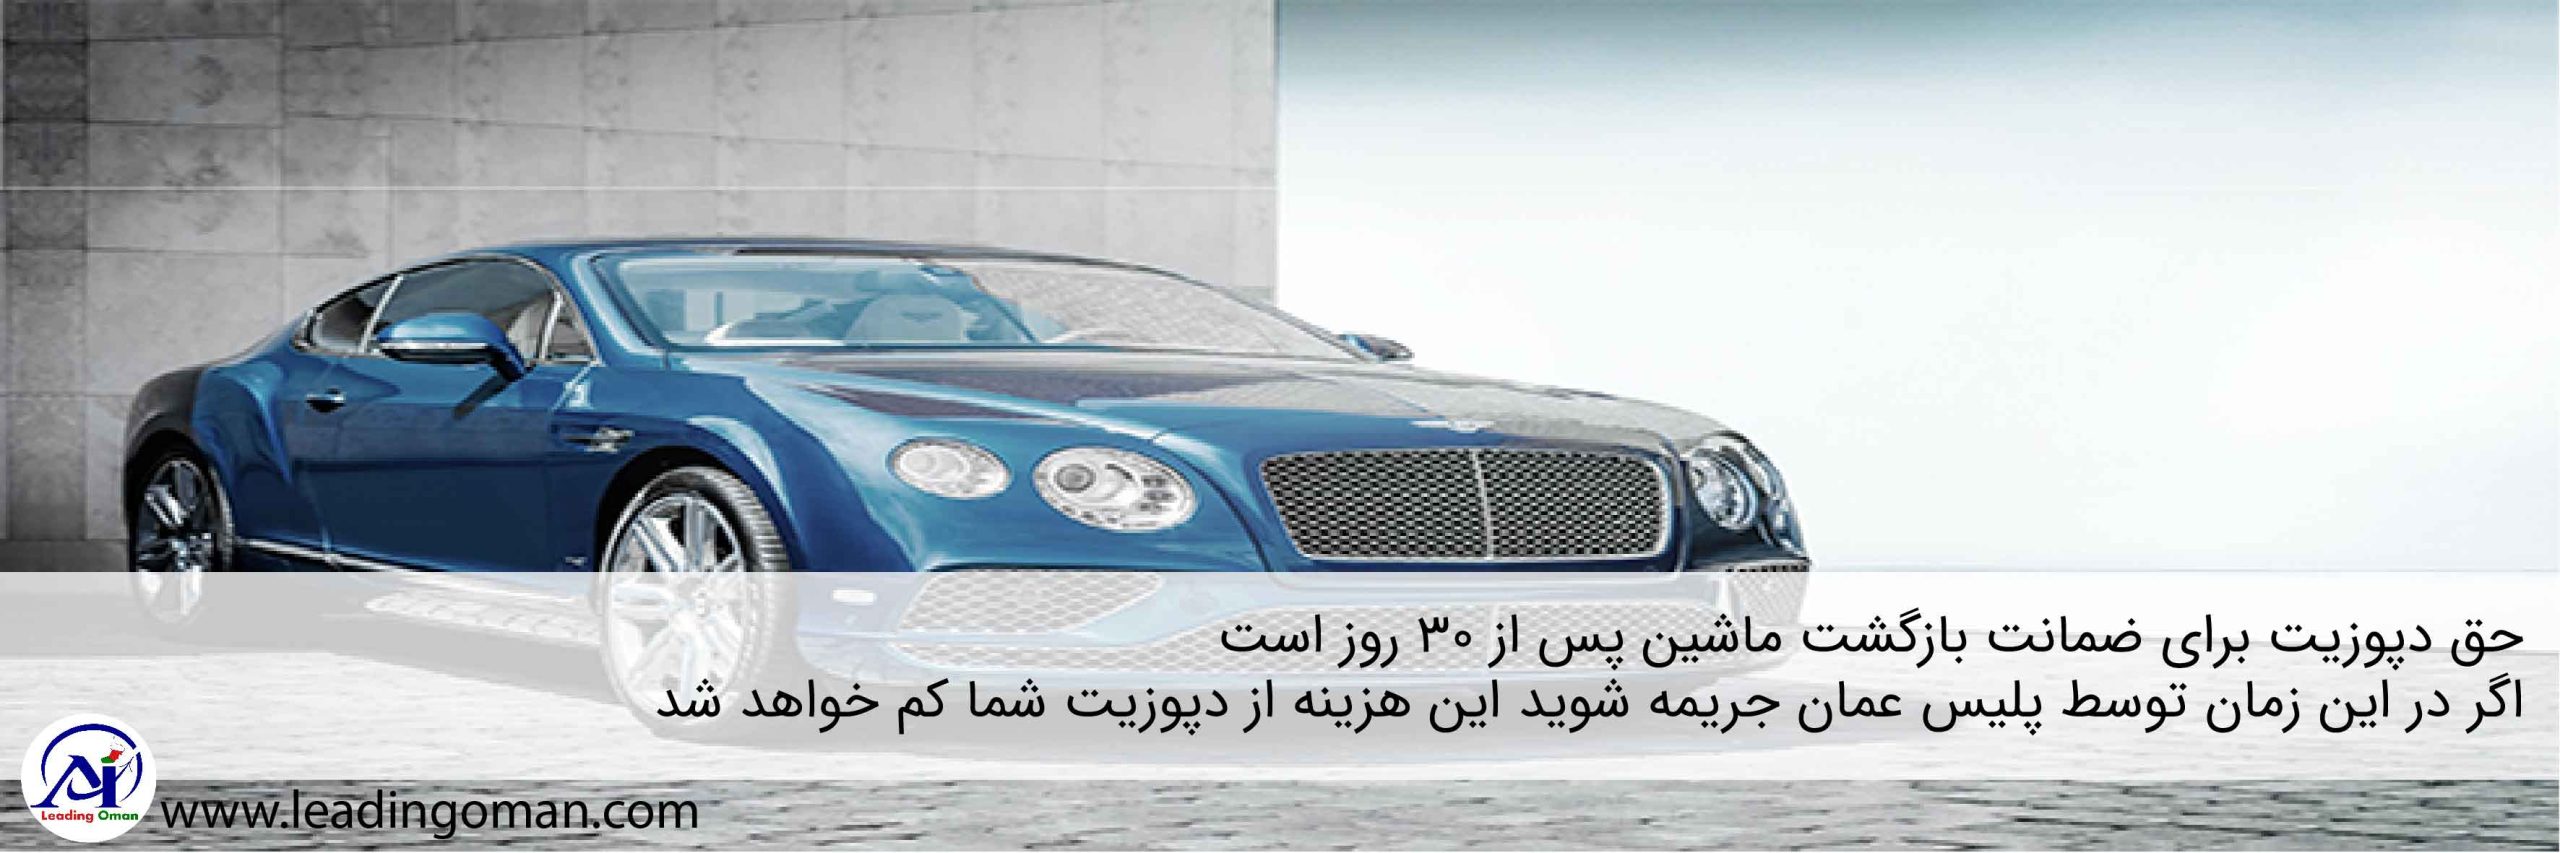 حق دپوزیت خودرو در عمان